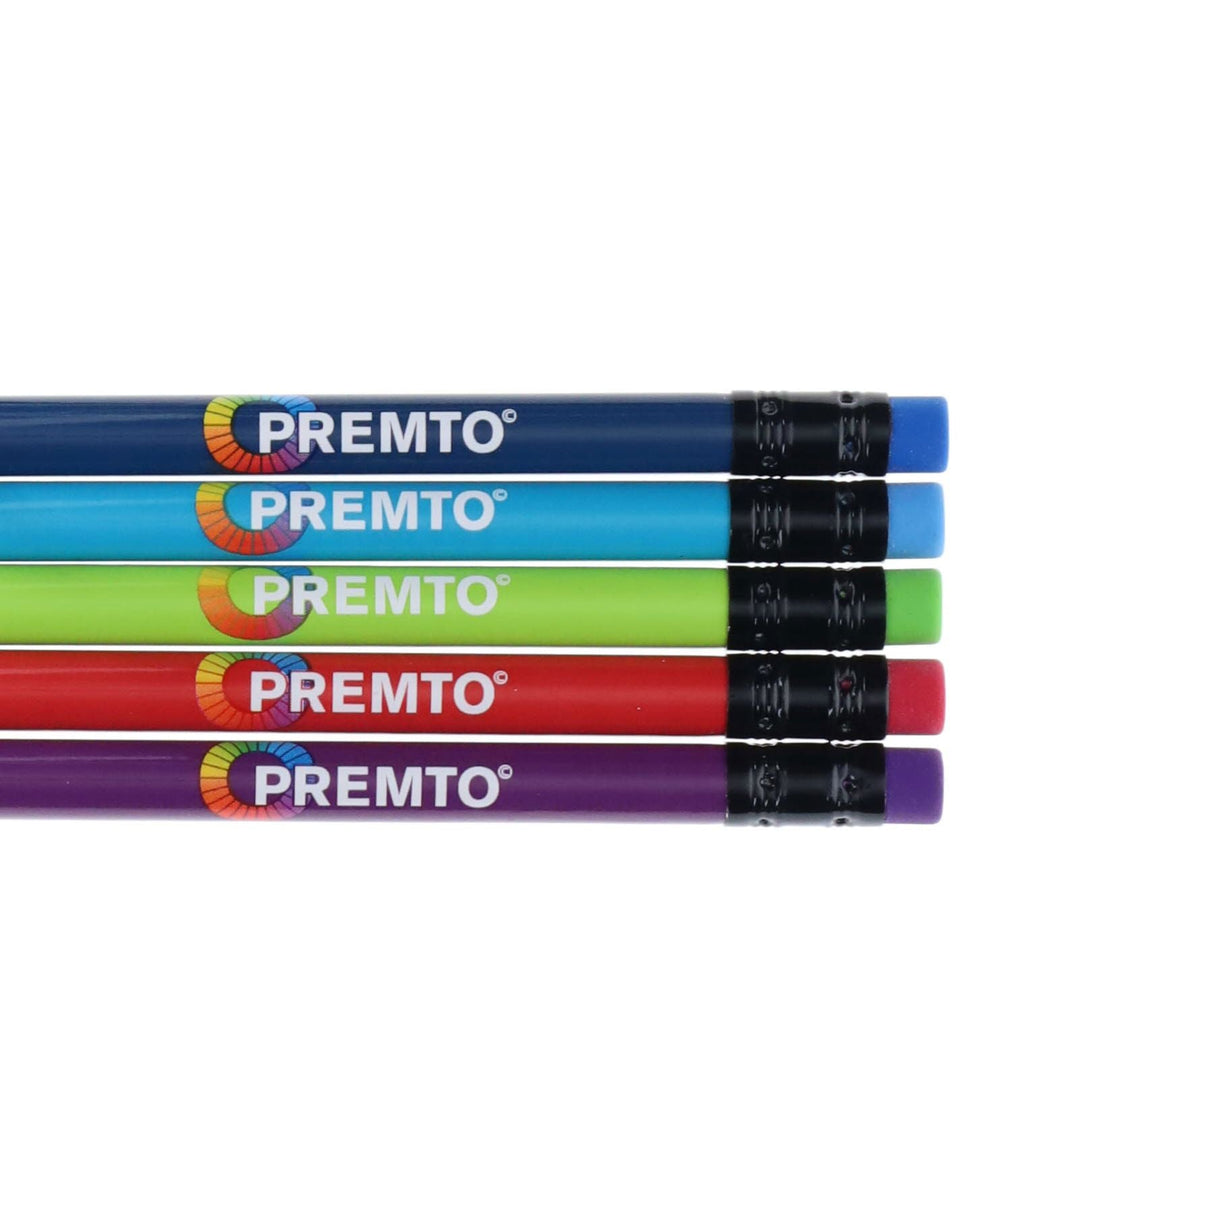 Premto HB Pencils With Eraser Tip - Pack of 5 | Stationery Shop UK